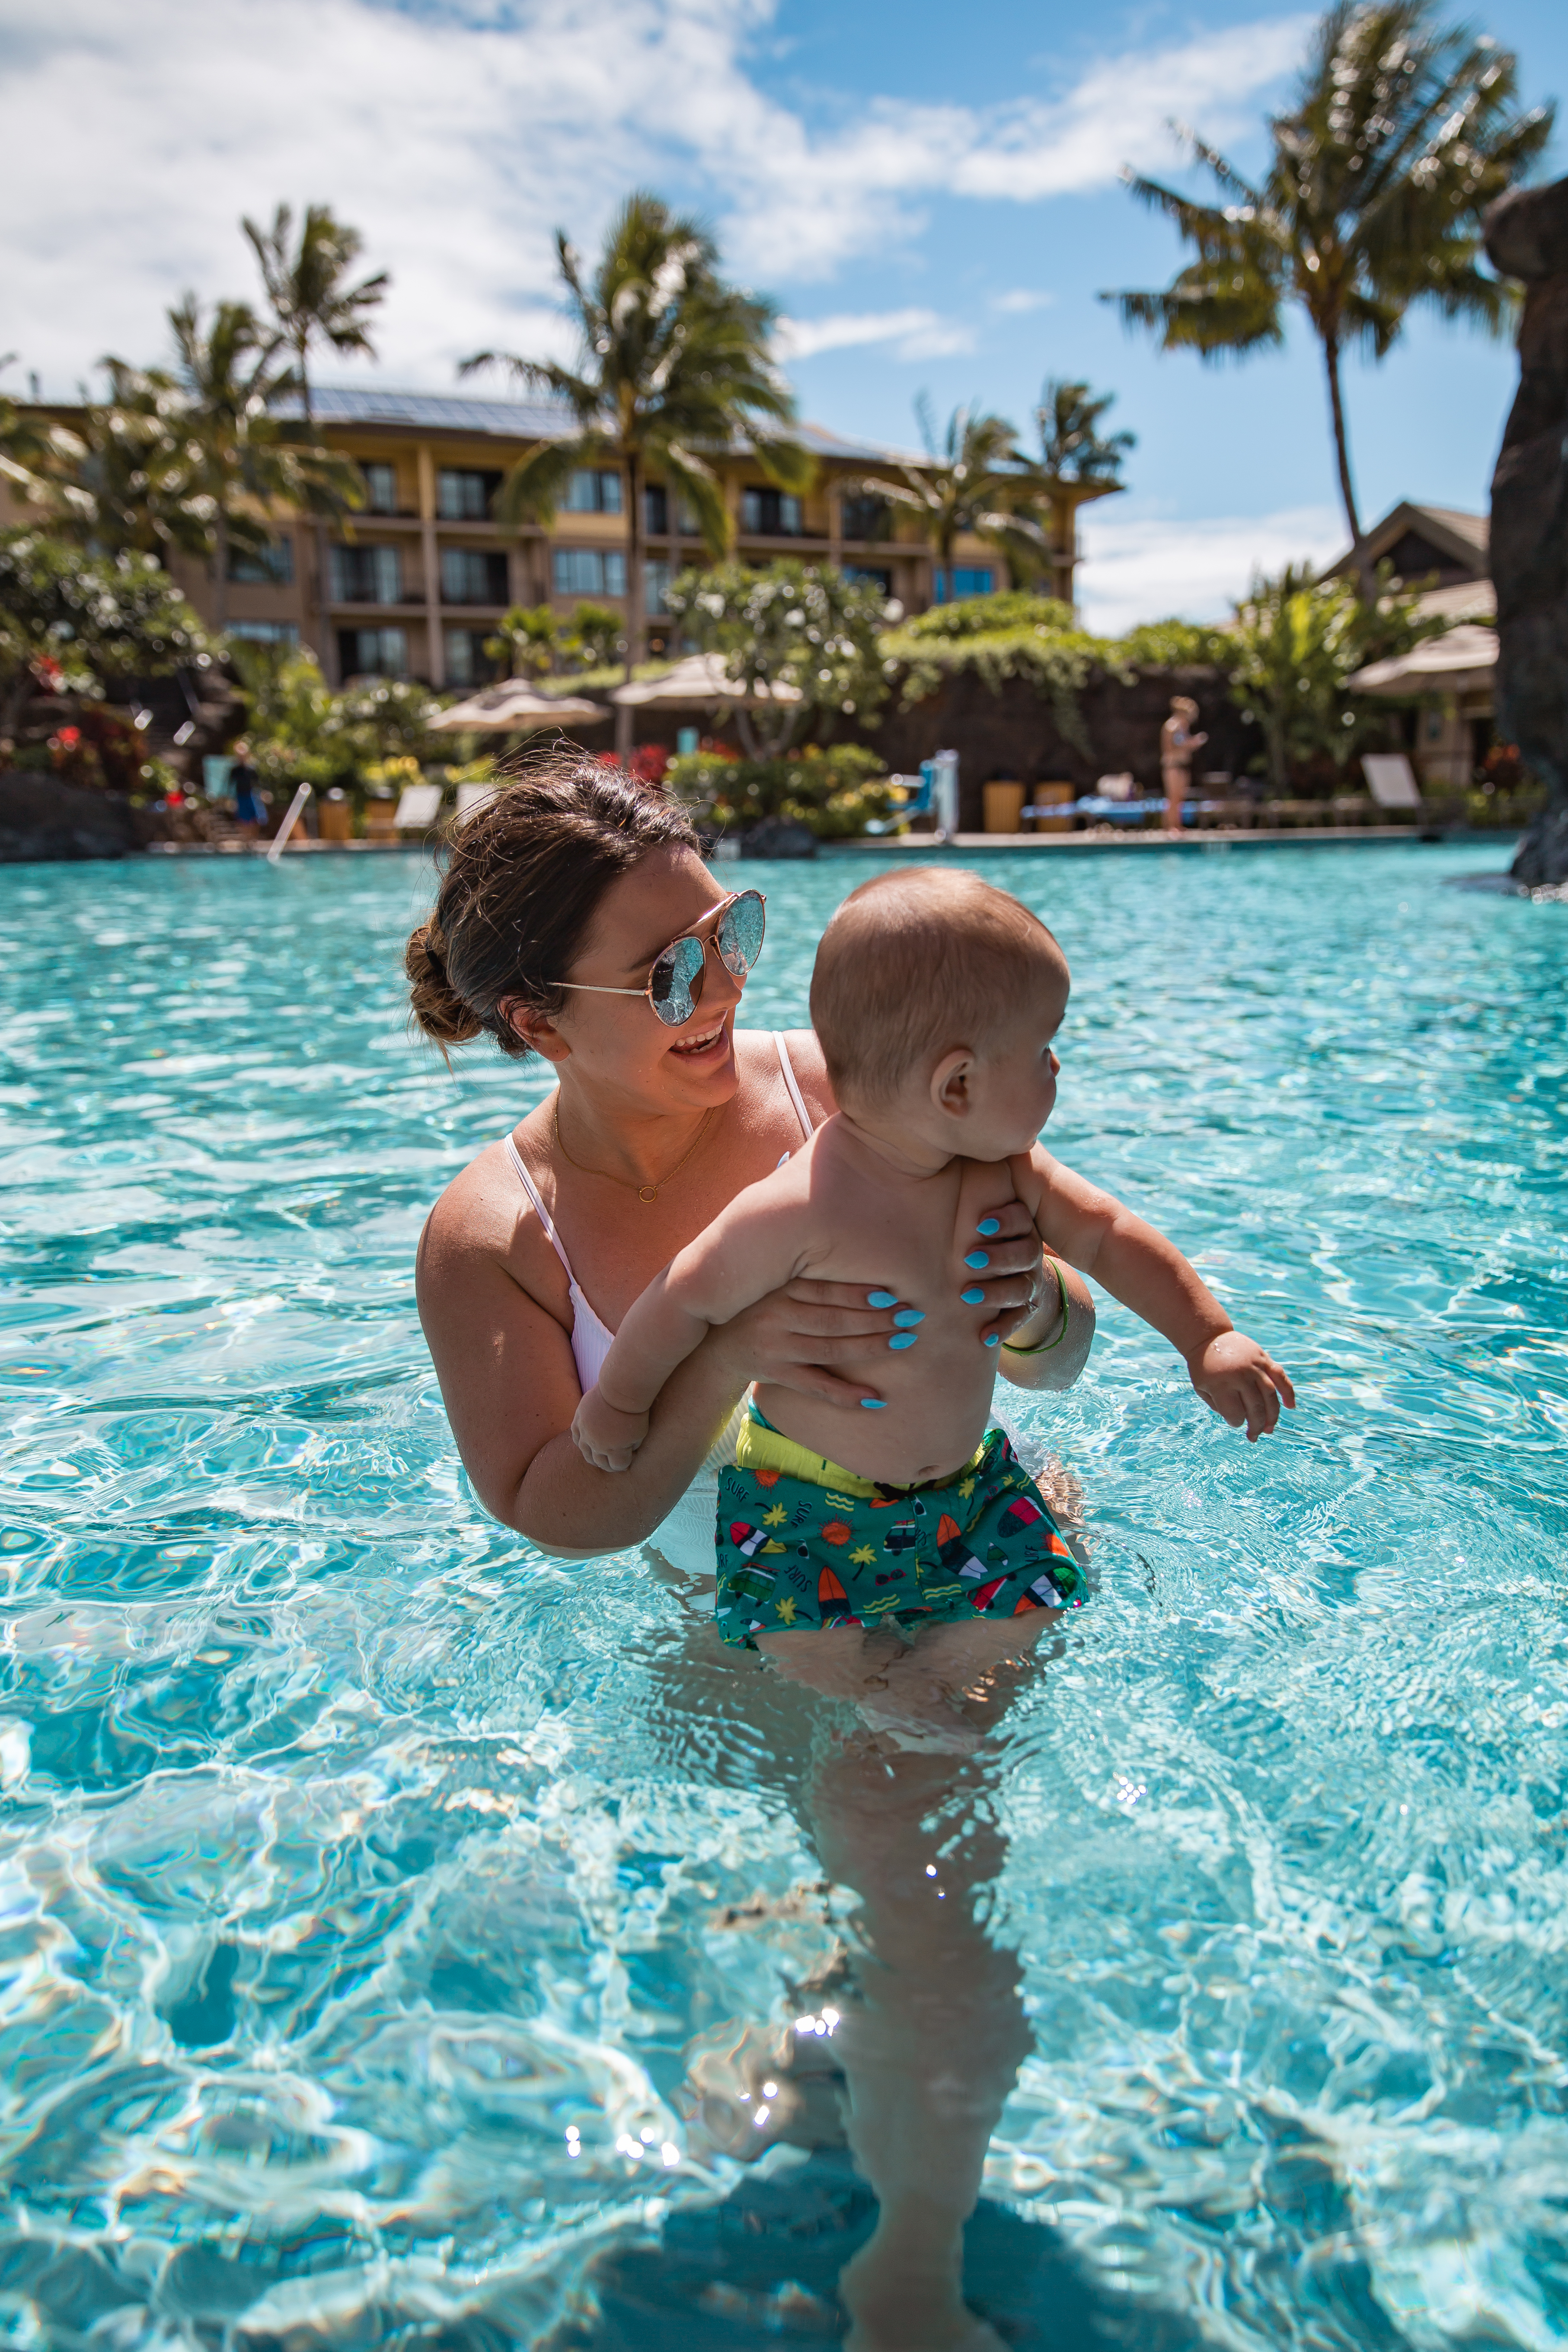 where to stay in kauai | best kauai resort for families